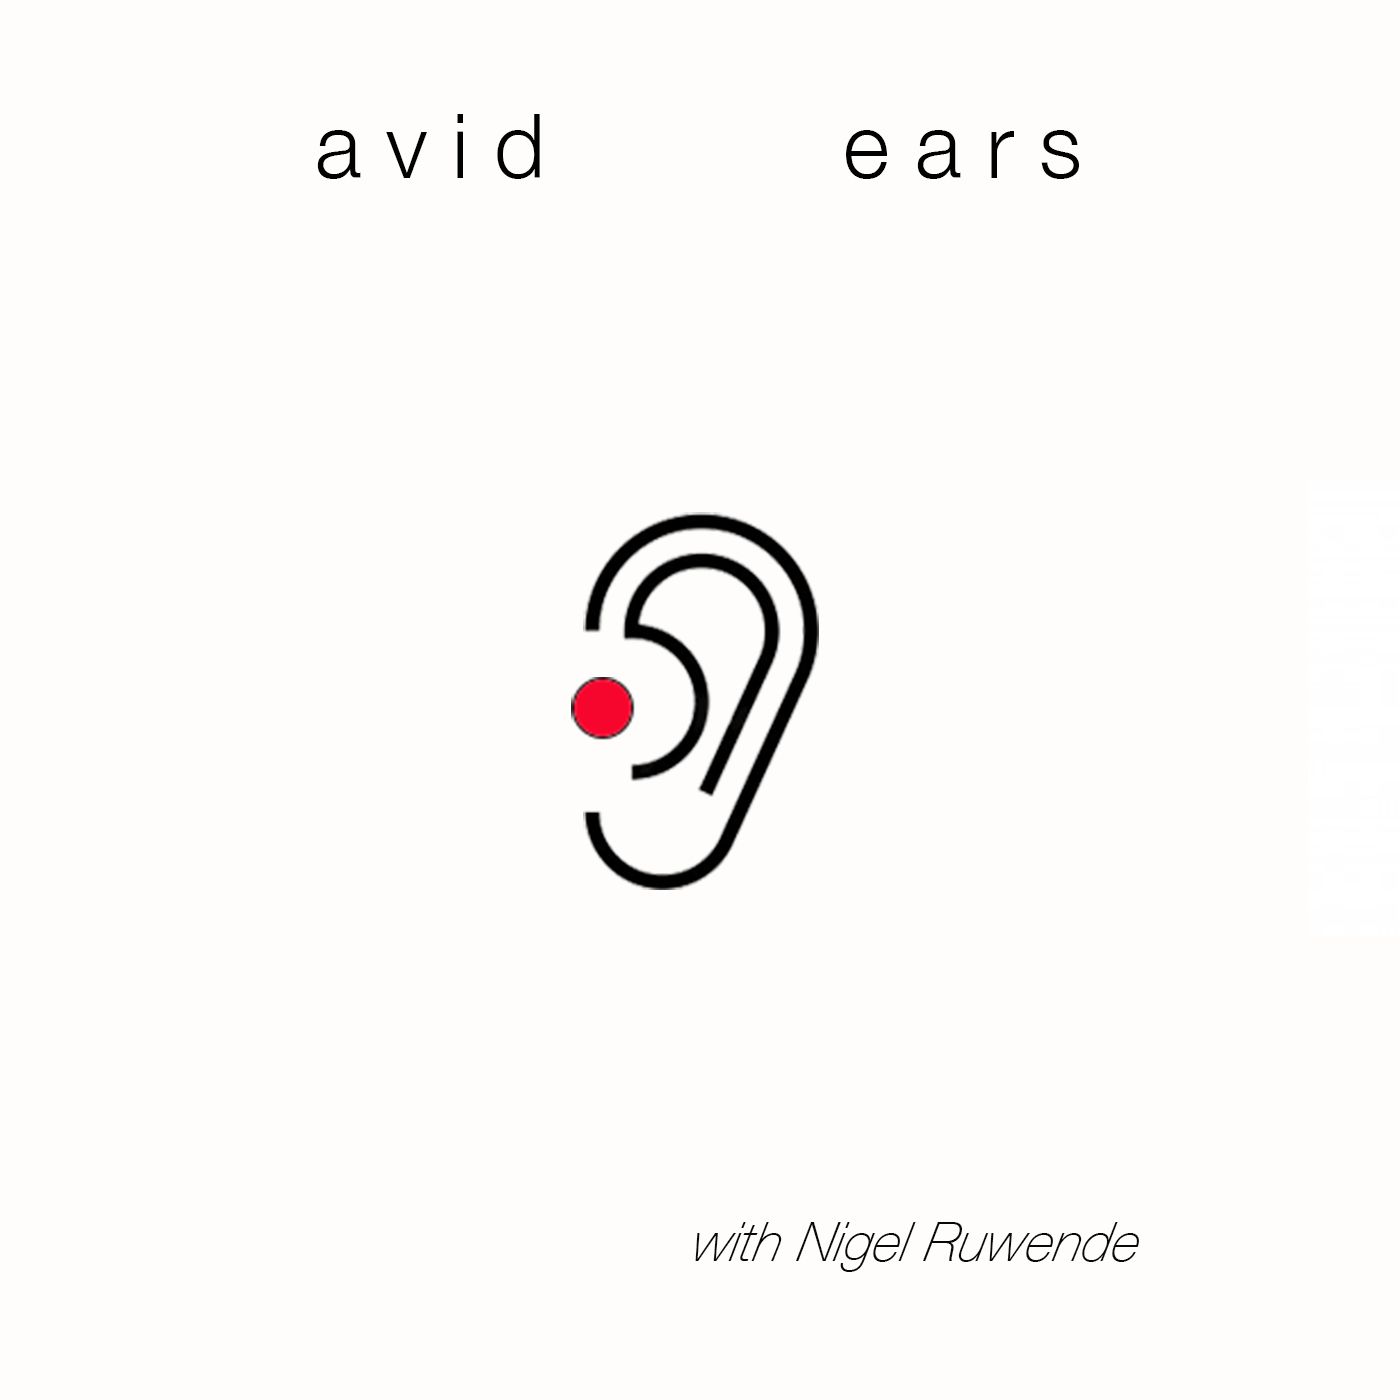 AVID EARS